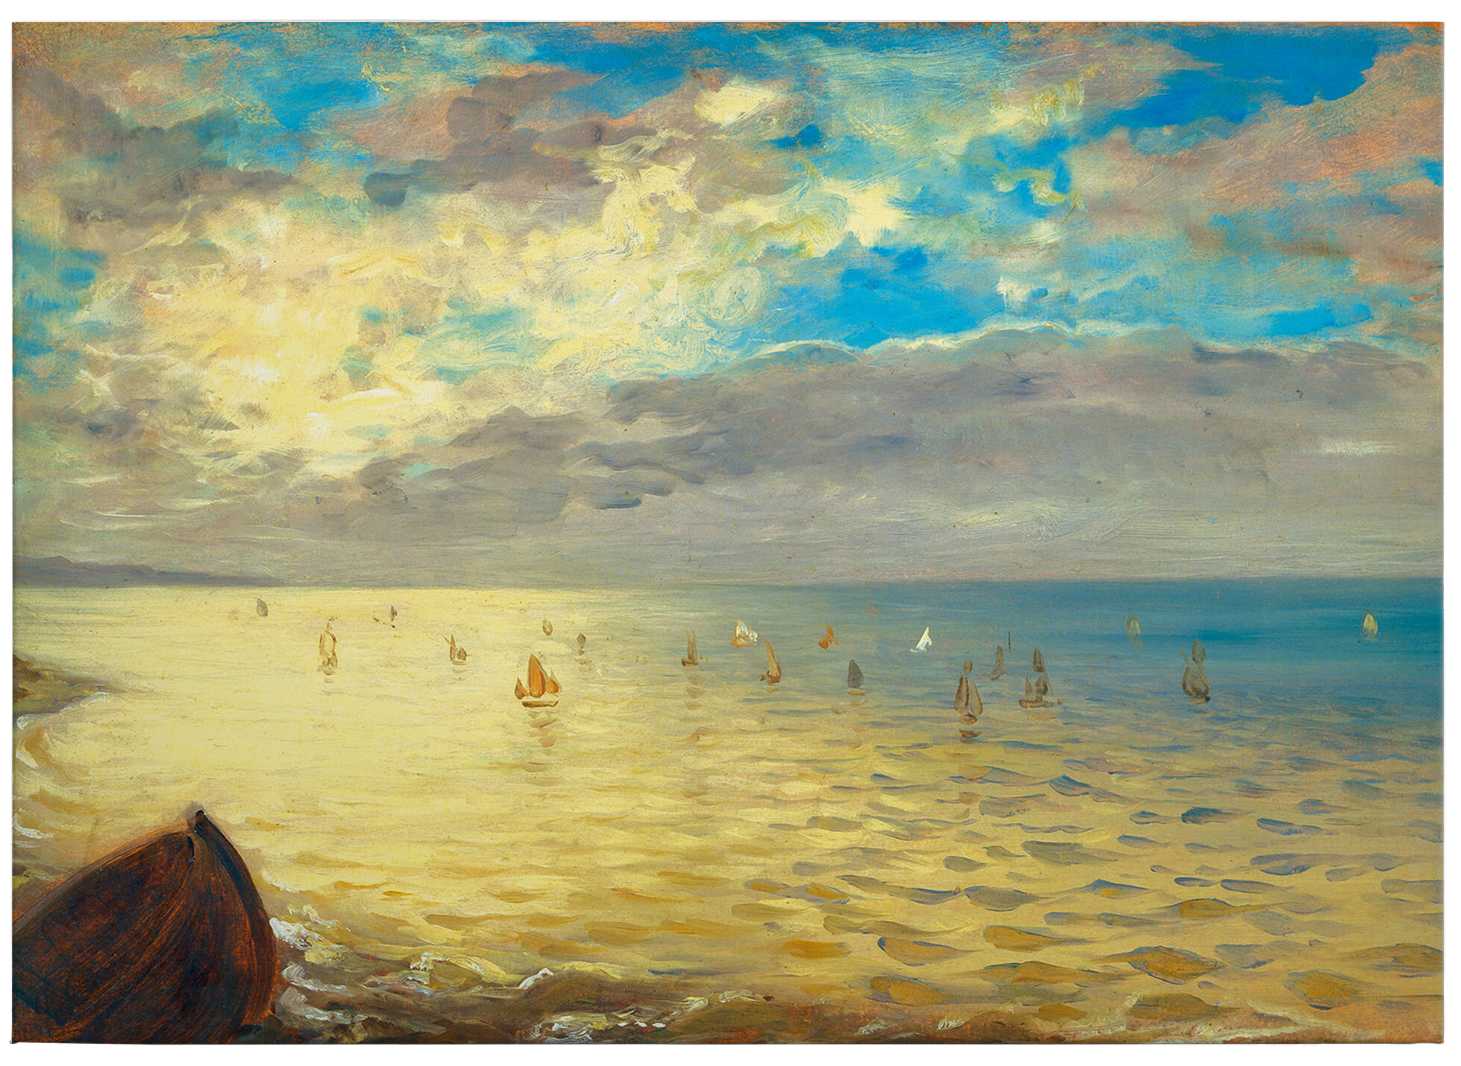             Kunst Leinwandbild "Das Meer" von Delacroix – 0,70 m x 0,50 m
        